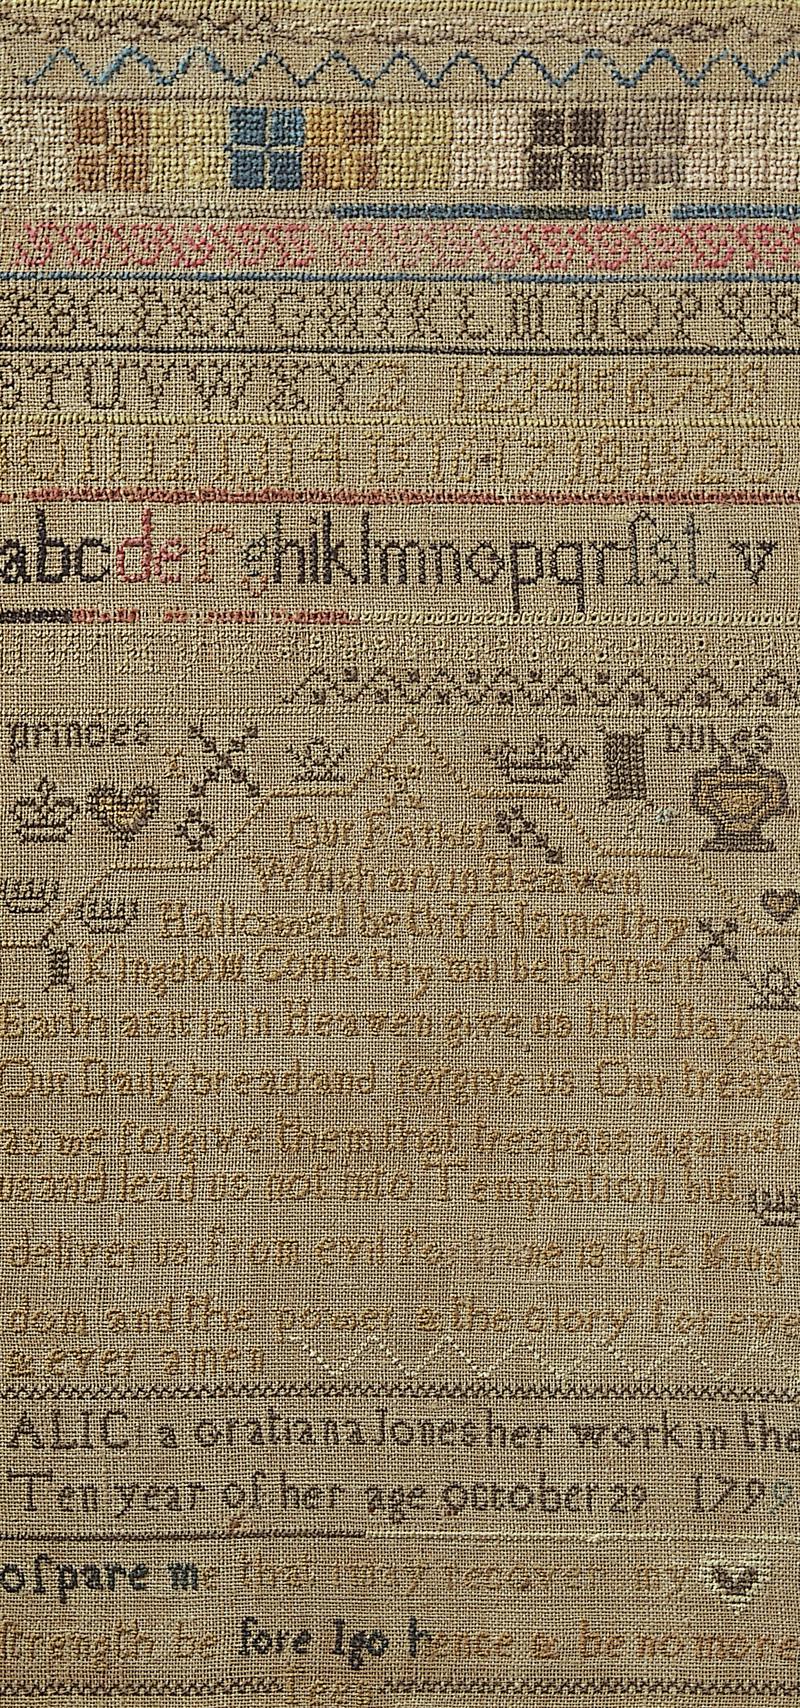 Sampler (alphabet, motifs & Biblical verse), made in Aberaeron, 1799